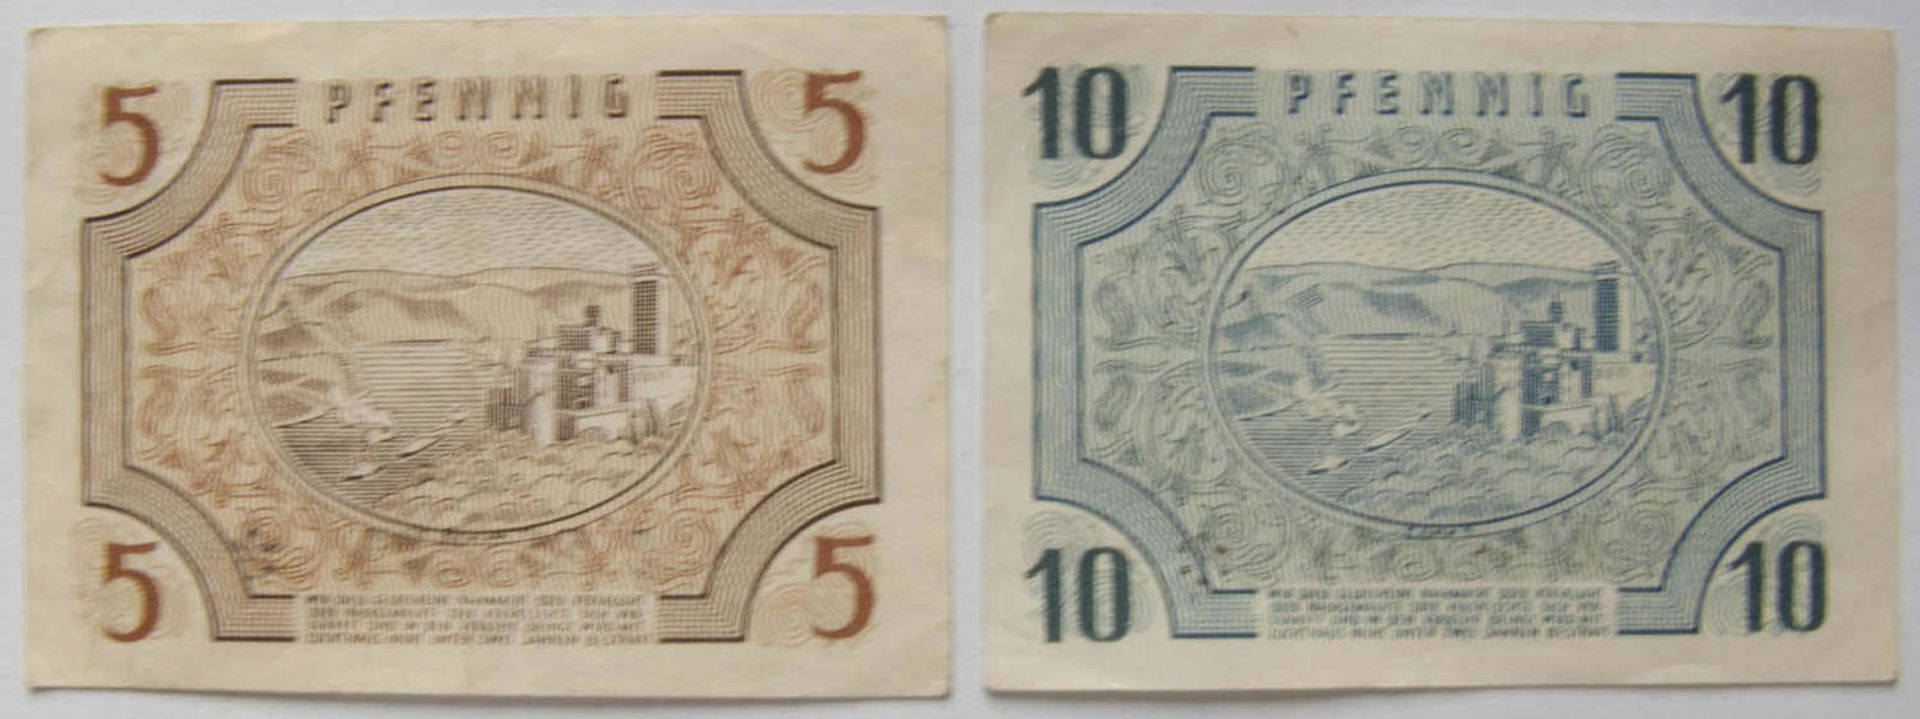 Alliierte Besetzung franz. Zone 1947, FBZ 4, 5 Pfennig II, wenig gebraucht und FBZ 5, 10 Pfennig, - Bild 2 aus 2